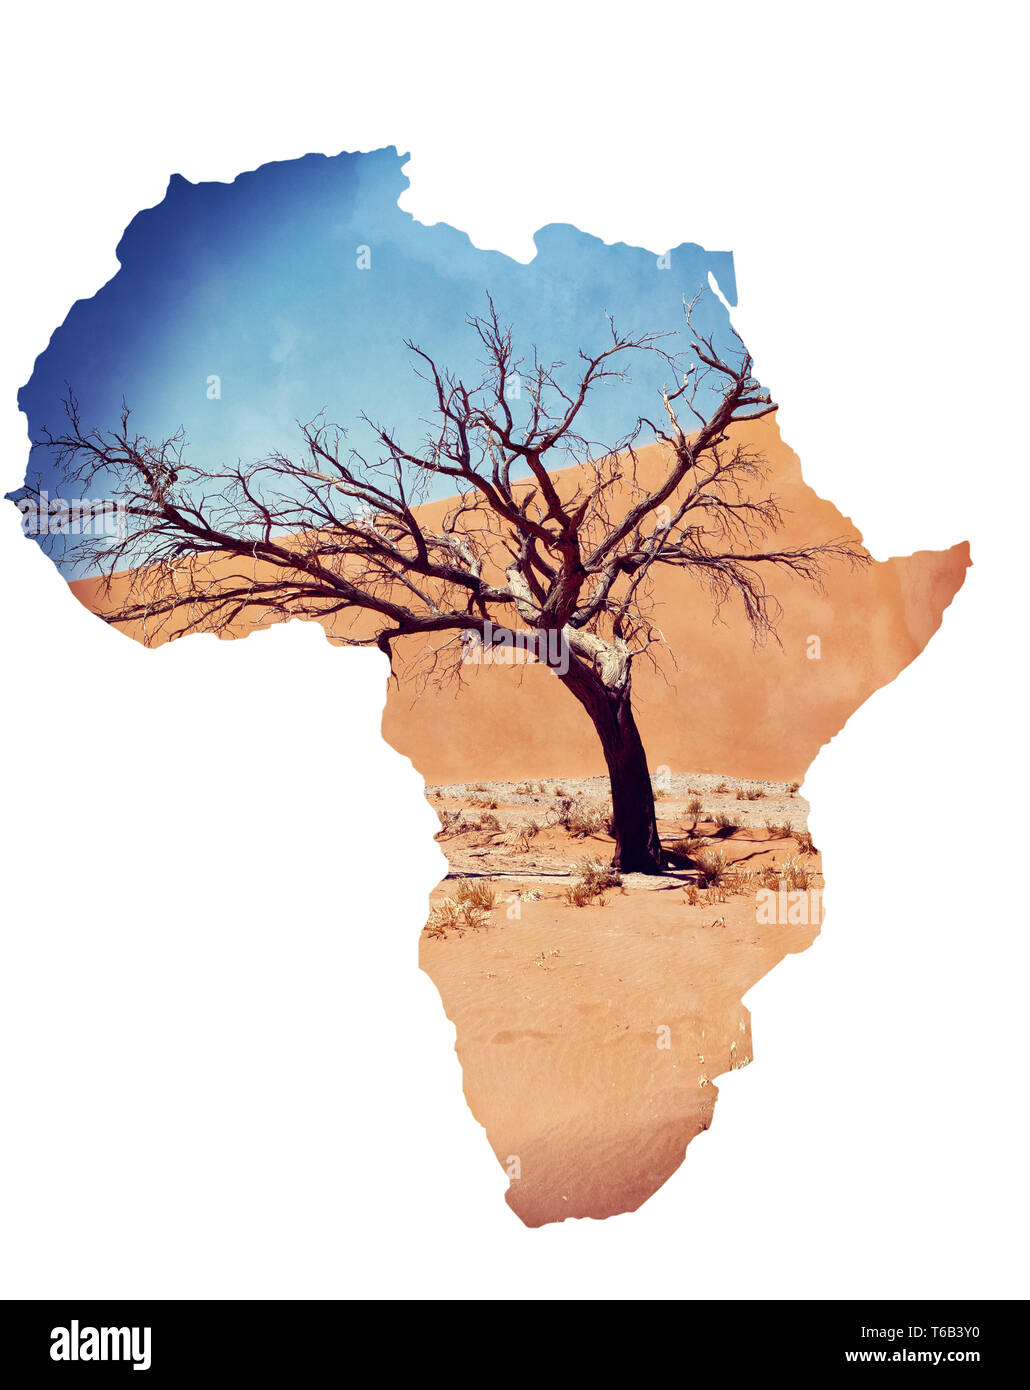 Dune 45 en Namibie sossusvlei avec arbre mort Banque D'Images